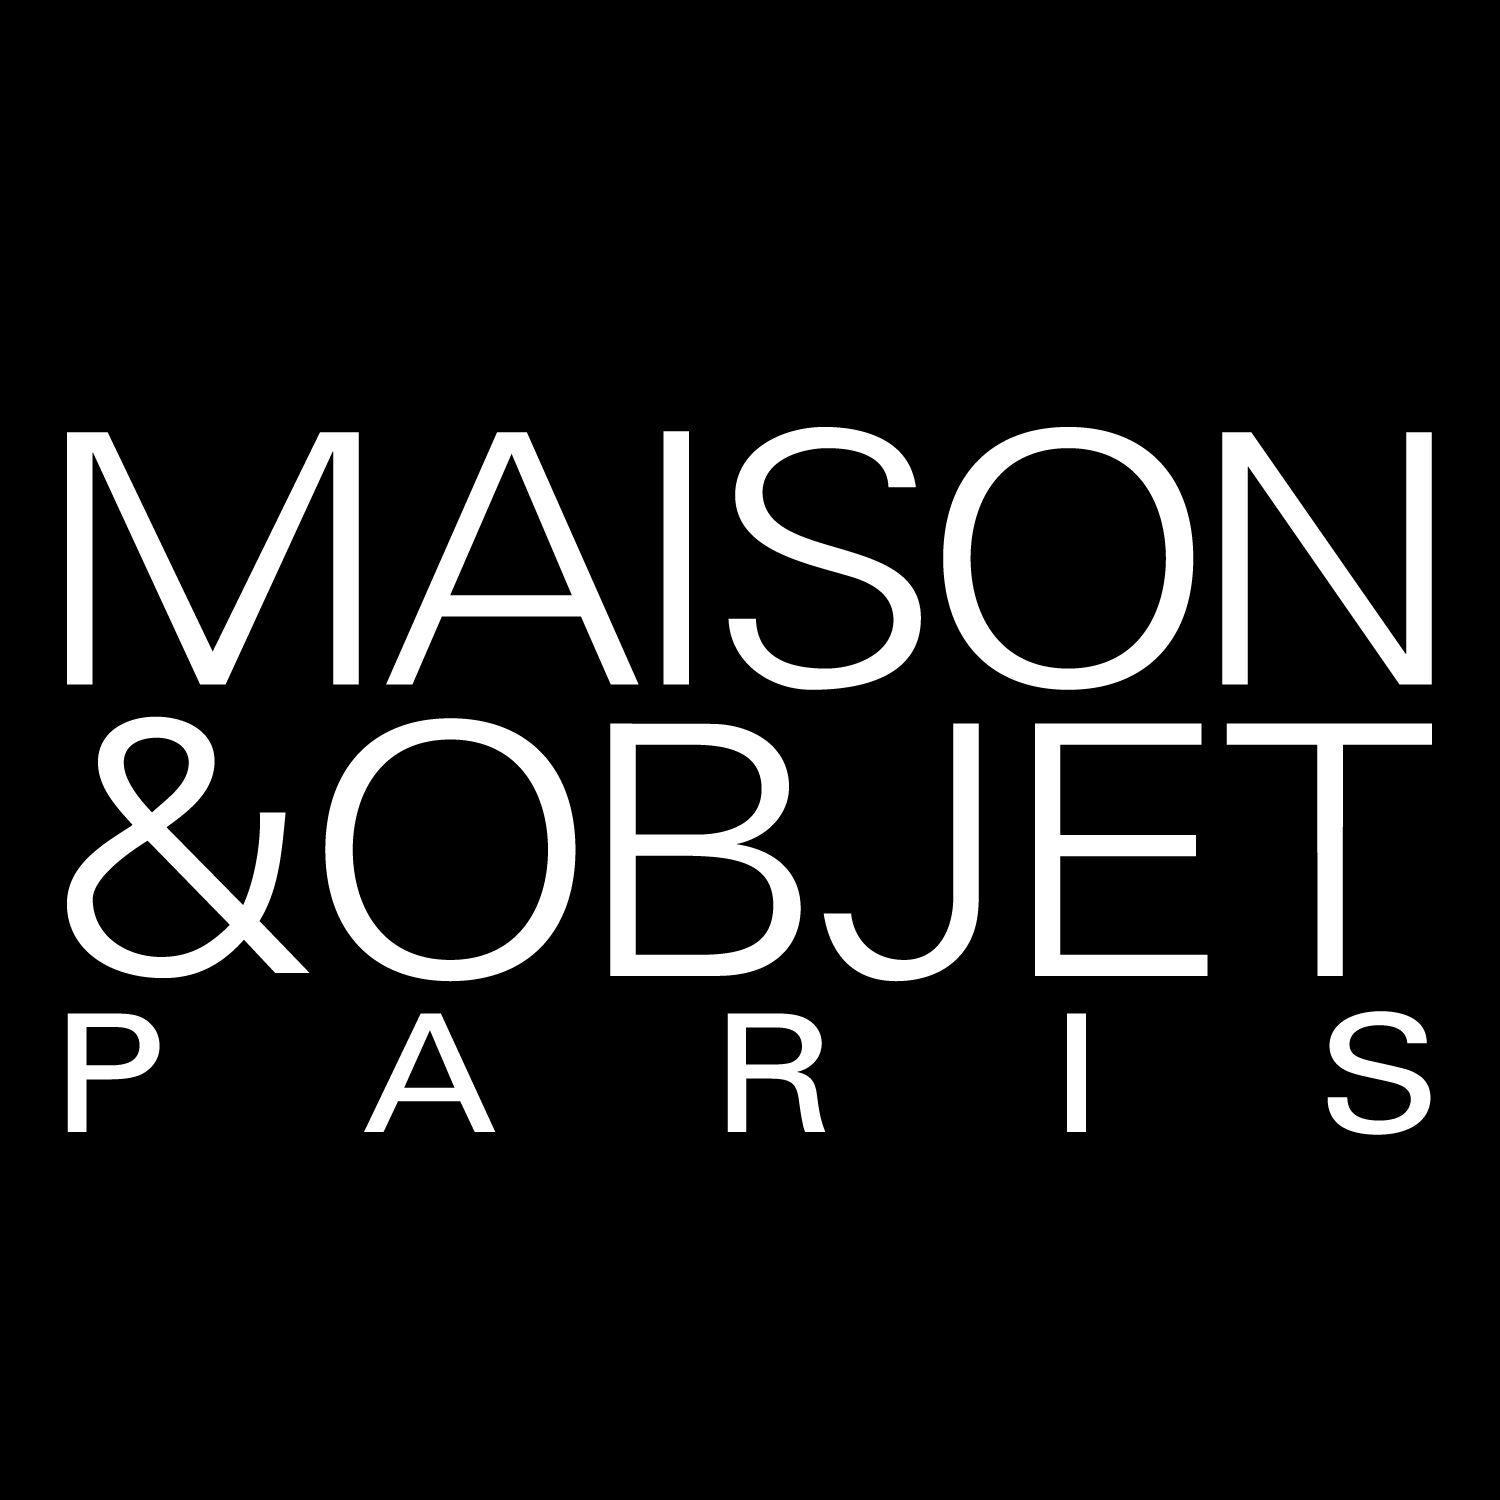 Maison & Objet September 2020 - online